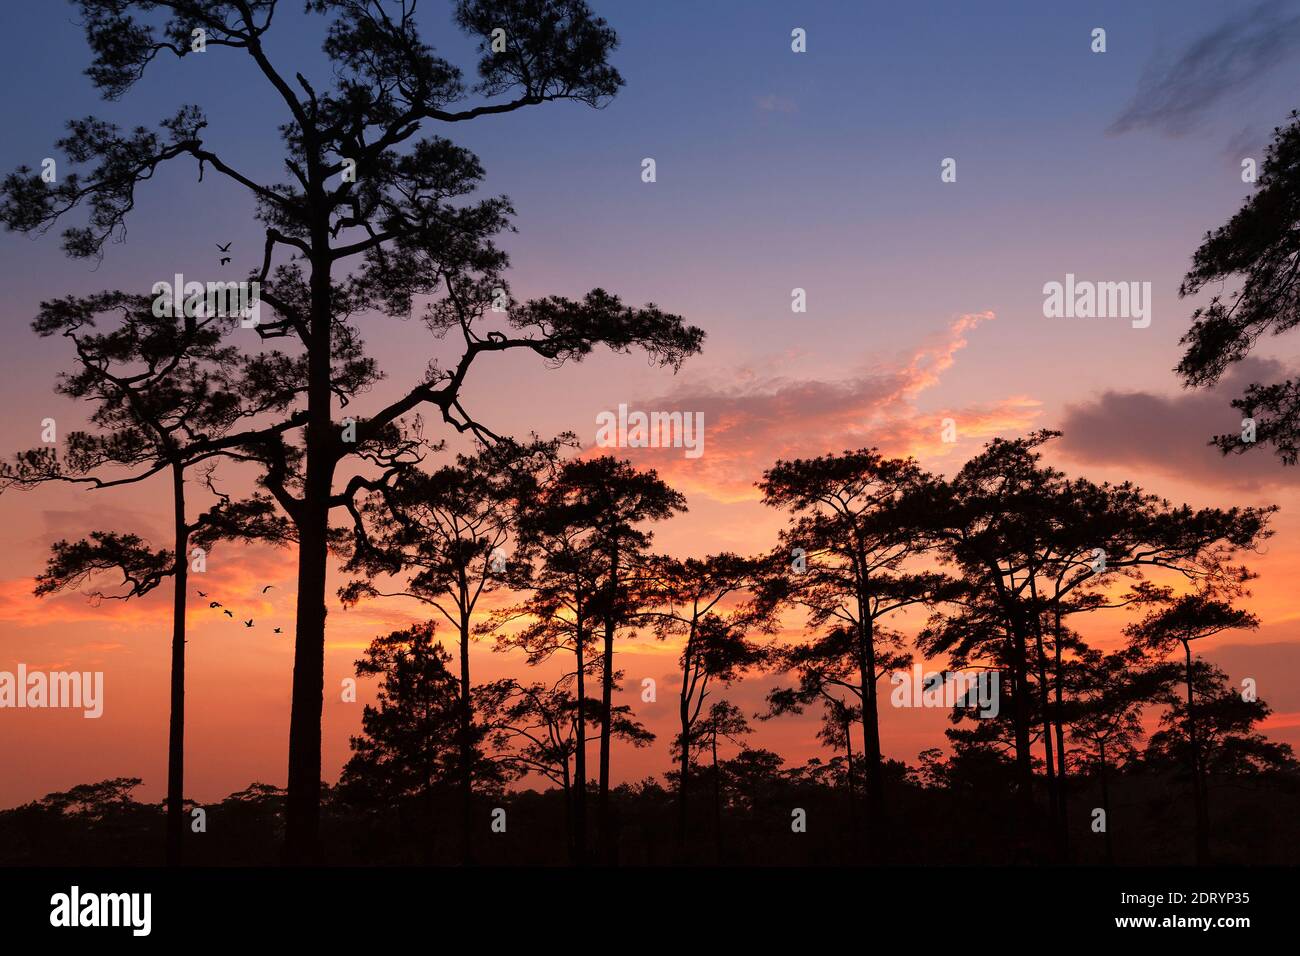 paysage silhouette forêt de pins avec ciel coloré et nuage avec groupe d'oiseaux Banque D'Images